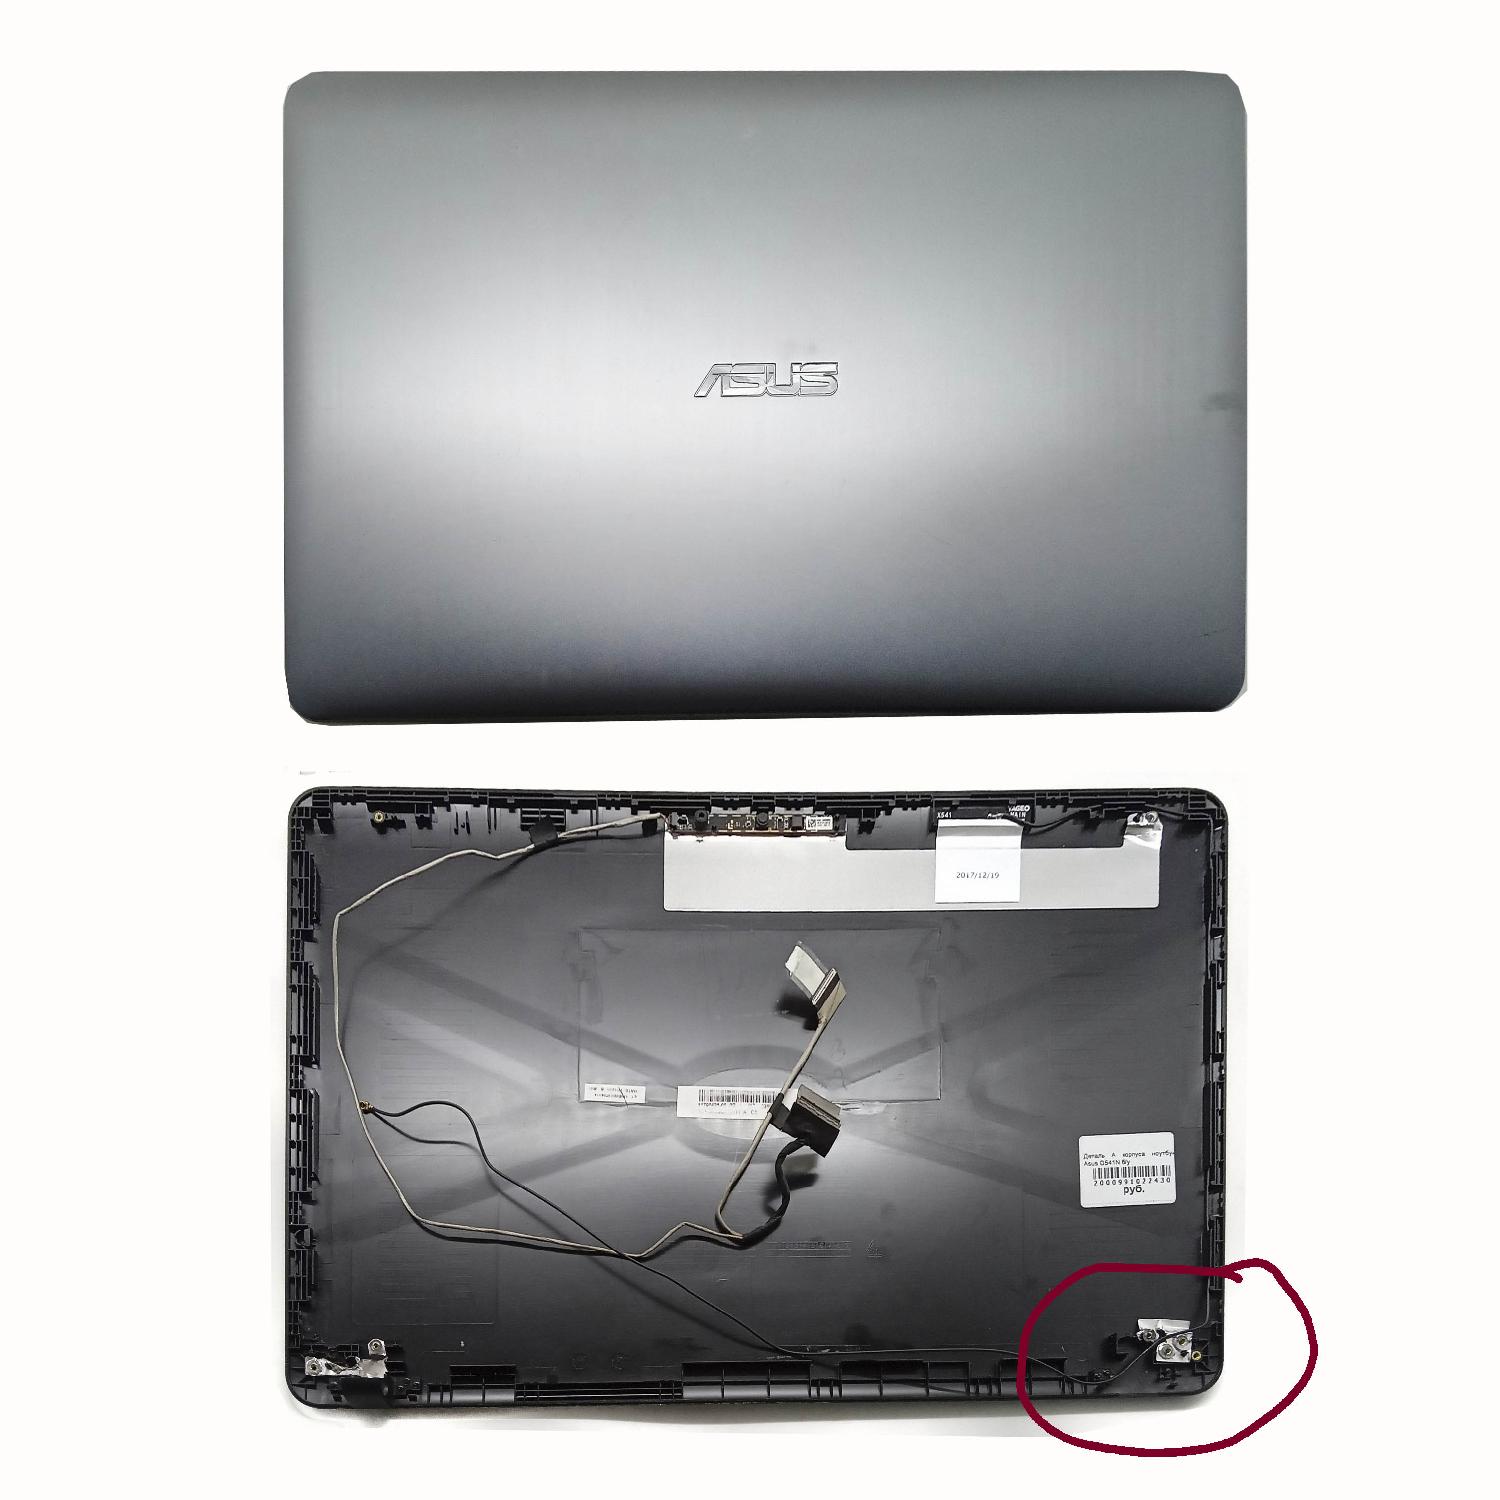 Деталь А корпуса ноутбука Asus D541N б/у